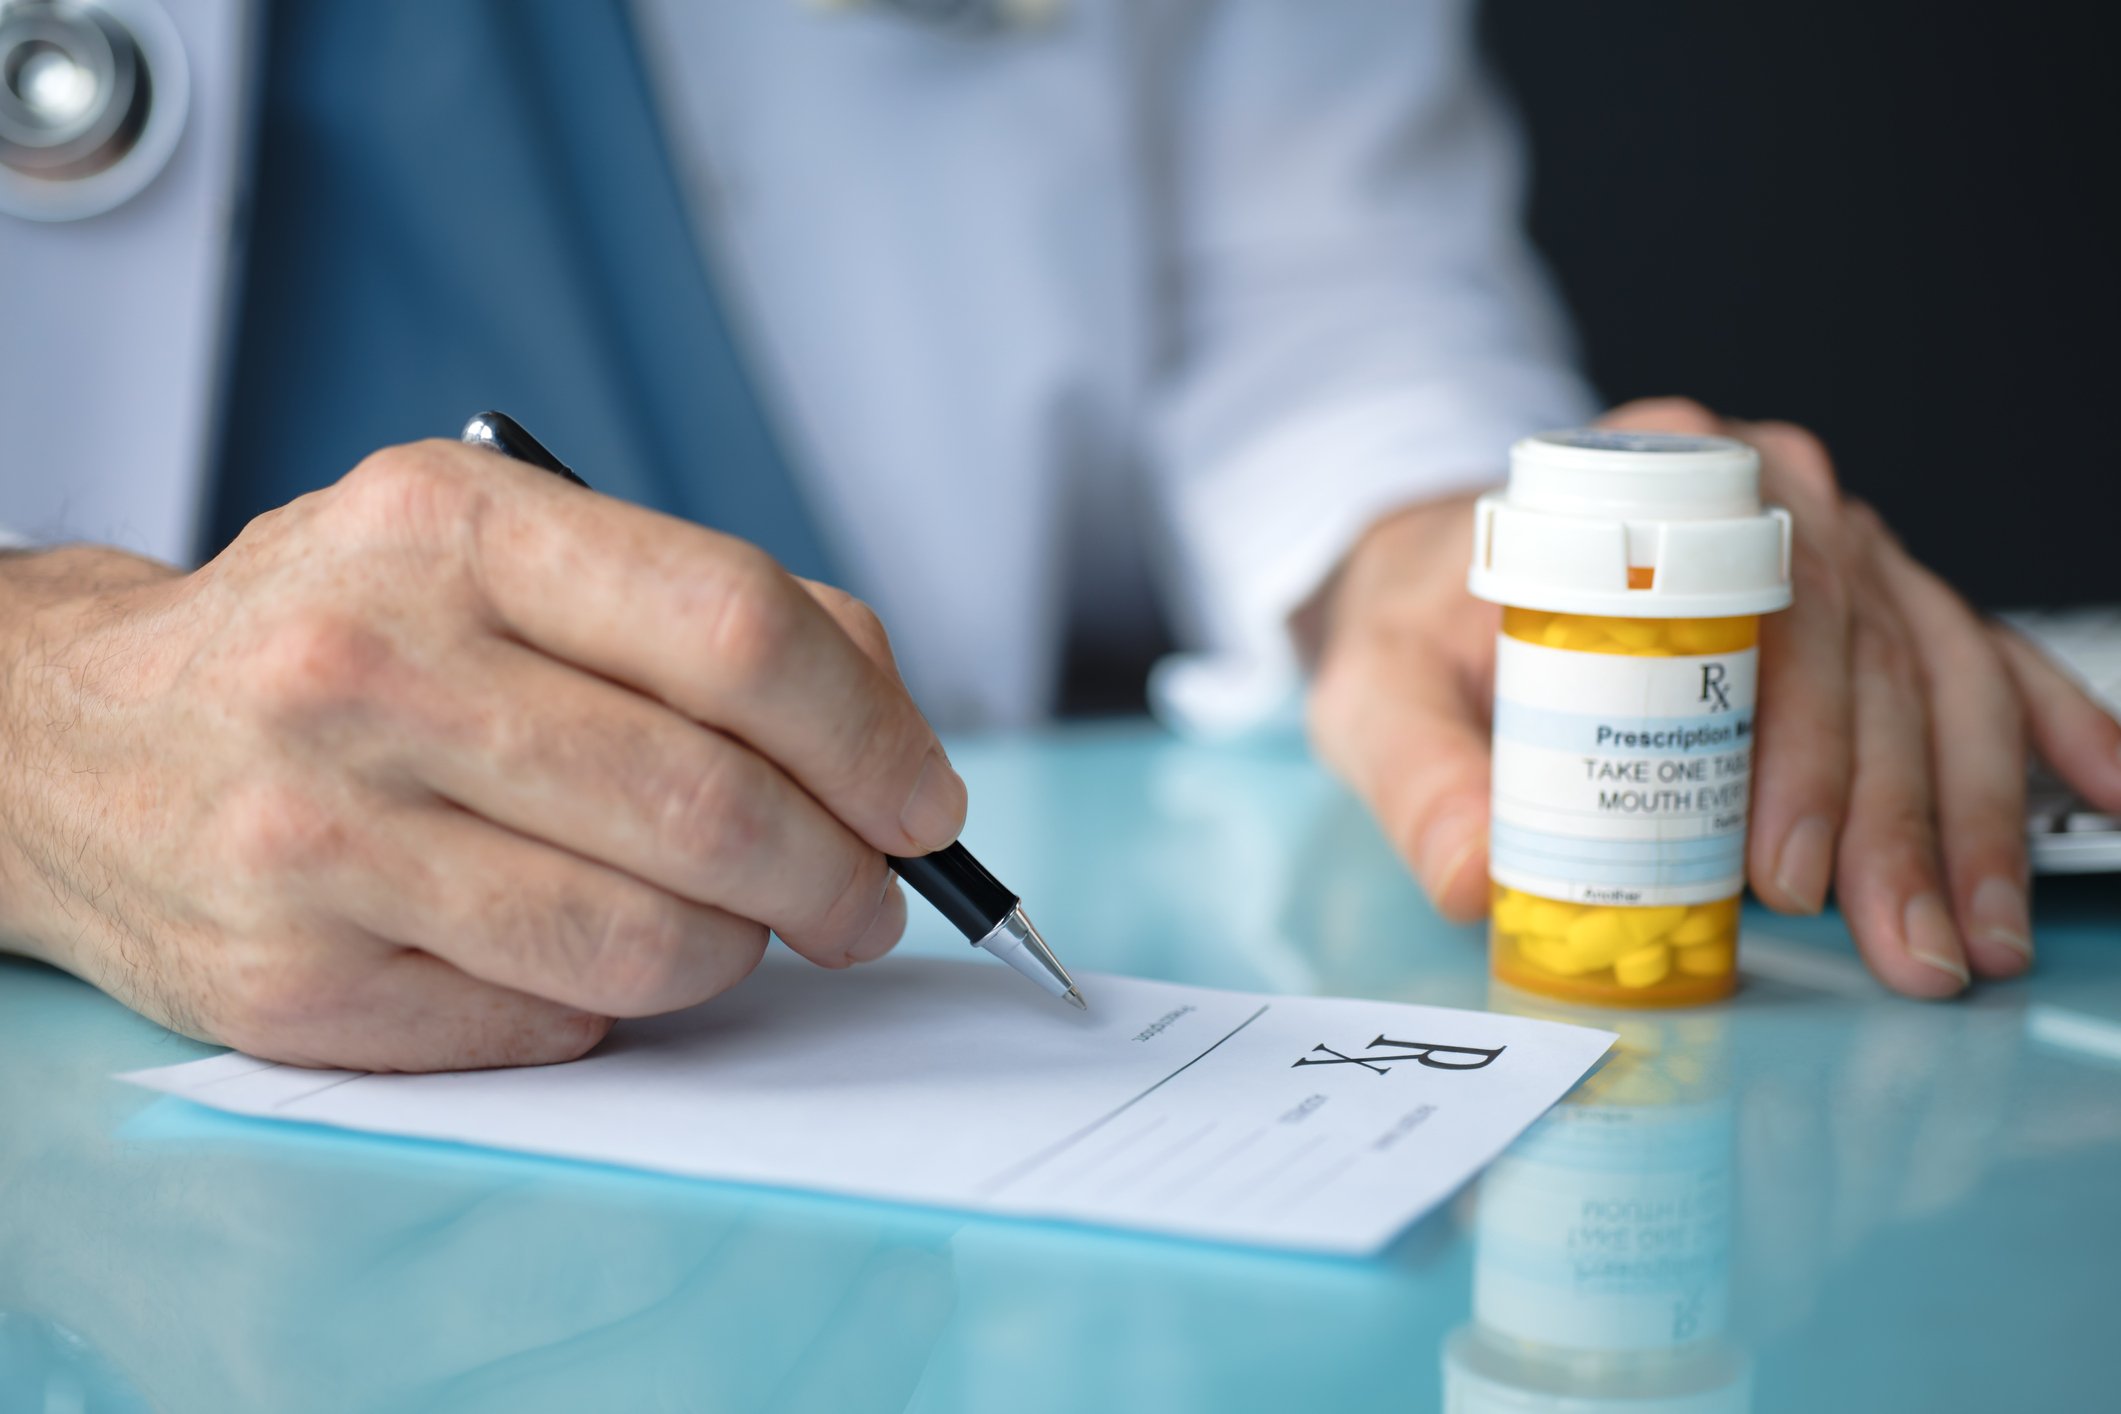 Do You Need a DEA Number to Write Prescriptions?